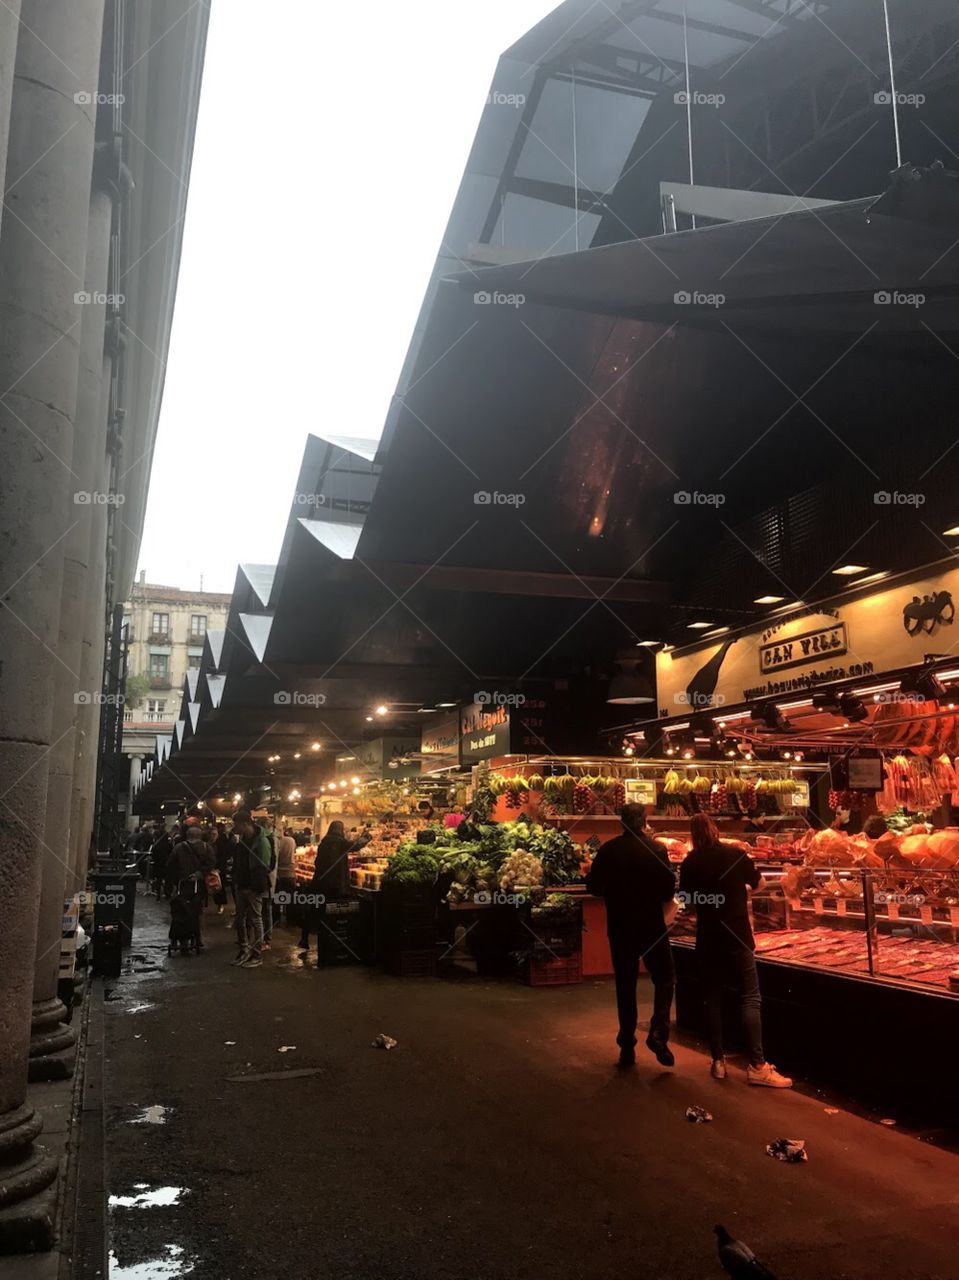 Food market in Barcelona Spain 